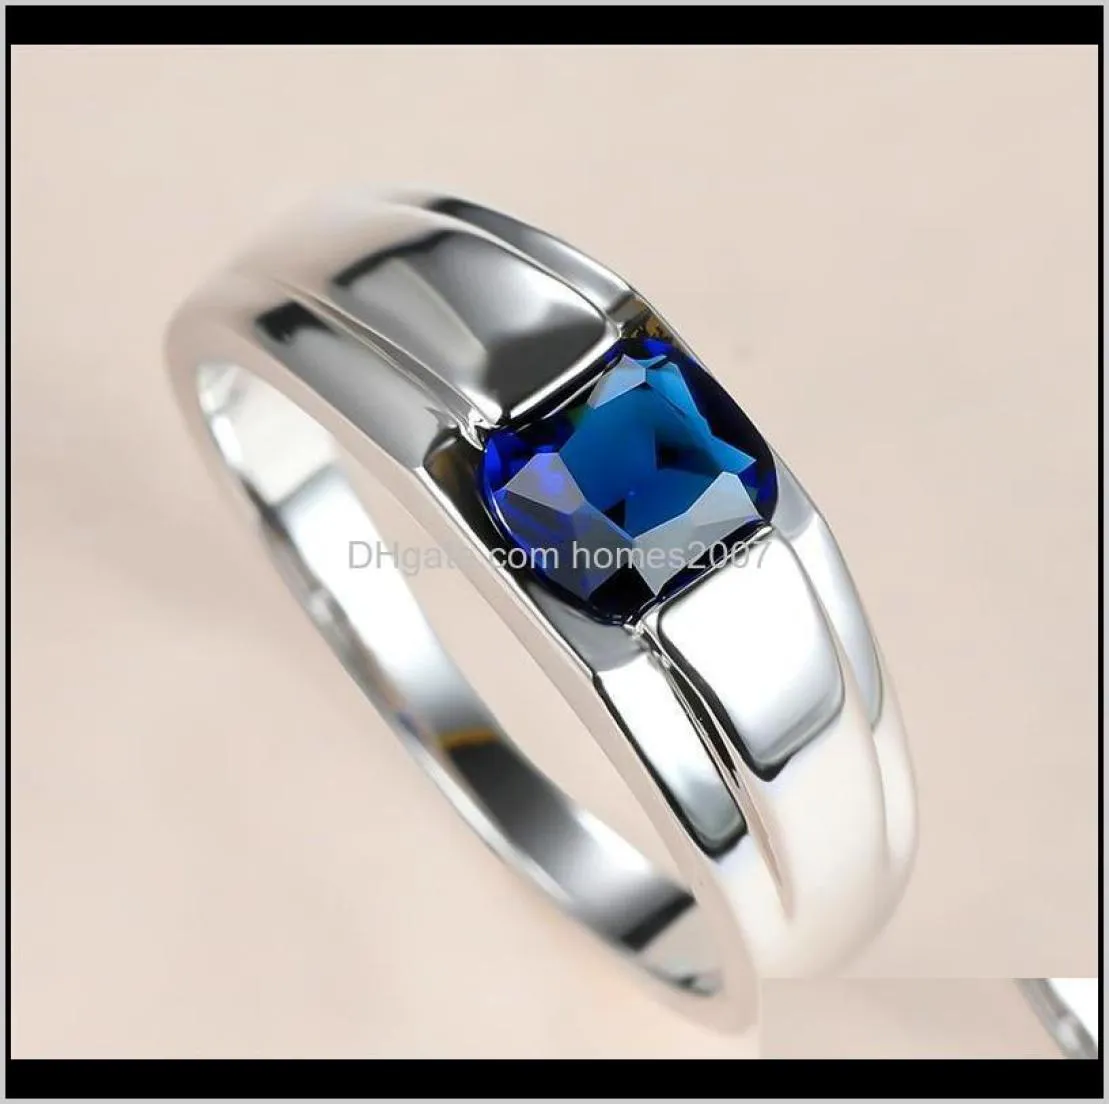 Jewelrysimple Masculino Feminino Anel de Cristal Azul Charme Sier Cor Casamento Clássico Quadrado Zircão Pedra Anéis de Noivado Para Mulheres Homens Dr6428496